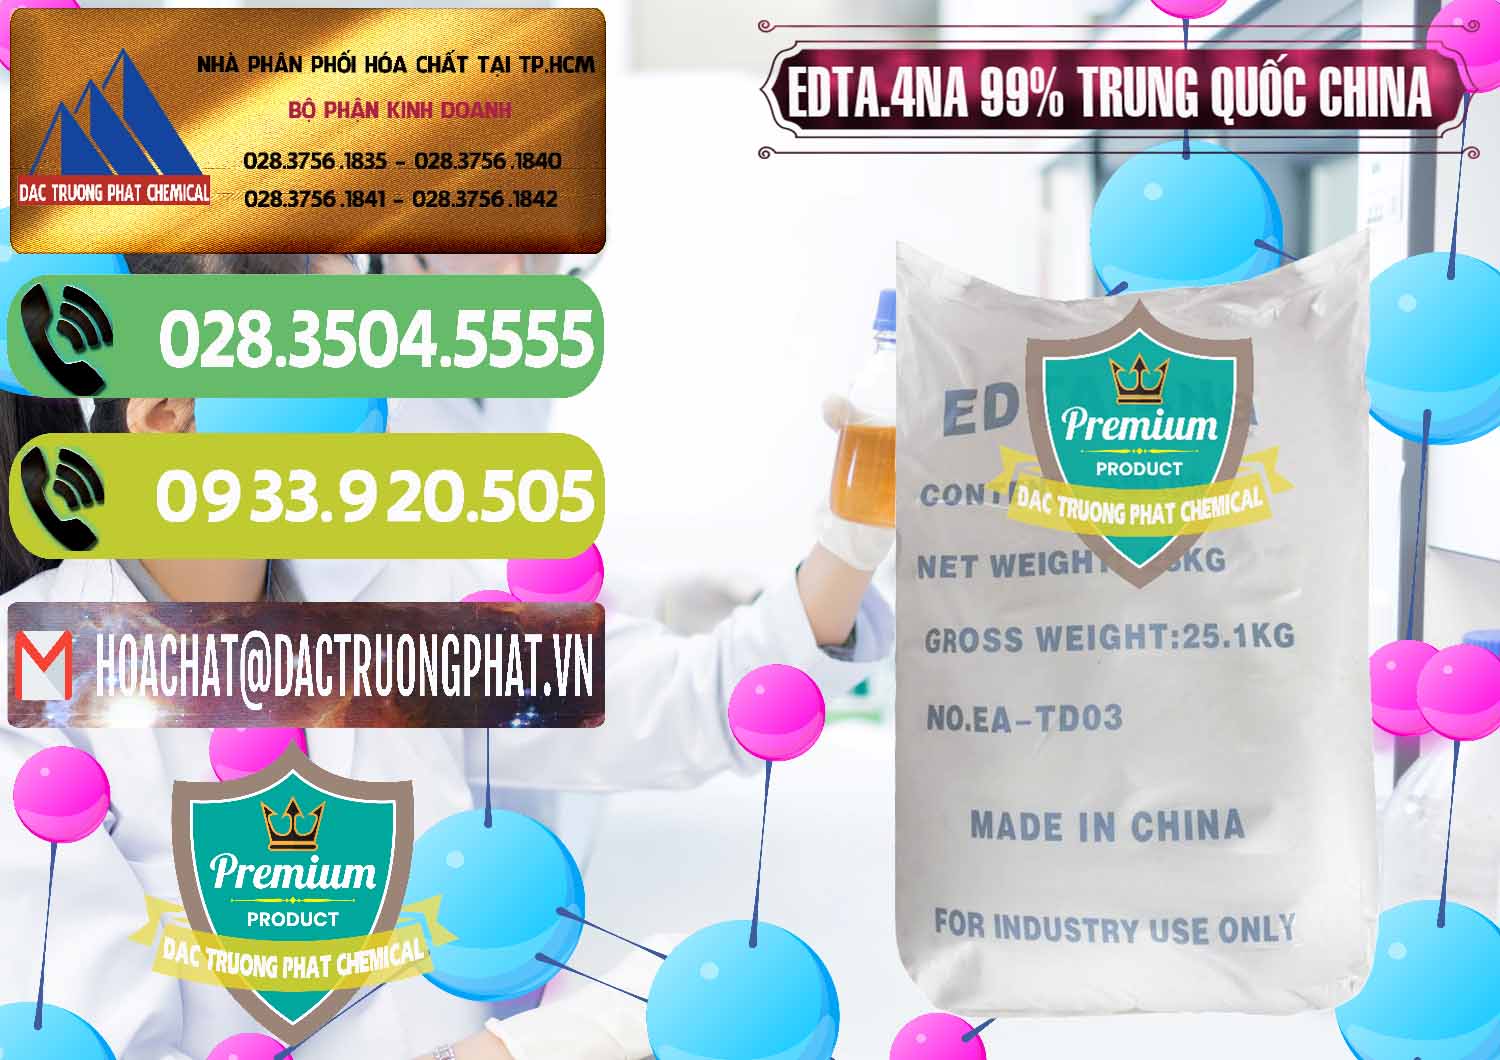 Cty kinh doanh ( bán ) EDTA.4NA - EDTA Muối 99% Trung Quốc China - 0292 - Đơn vị cung cấp _ phân phối hóa chất tại TP.HCM - hoachatmientay.vn